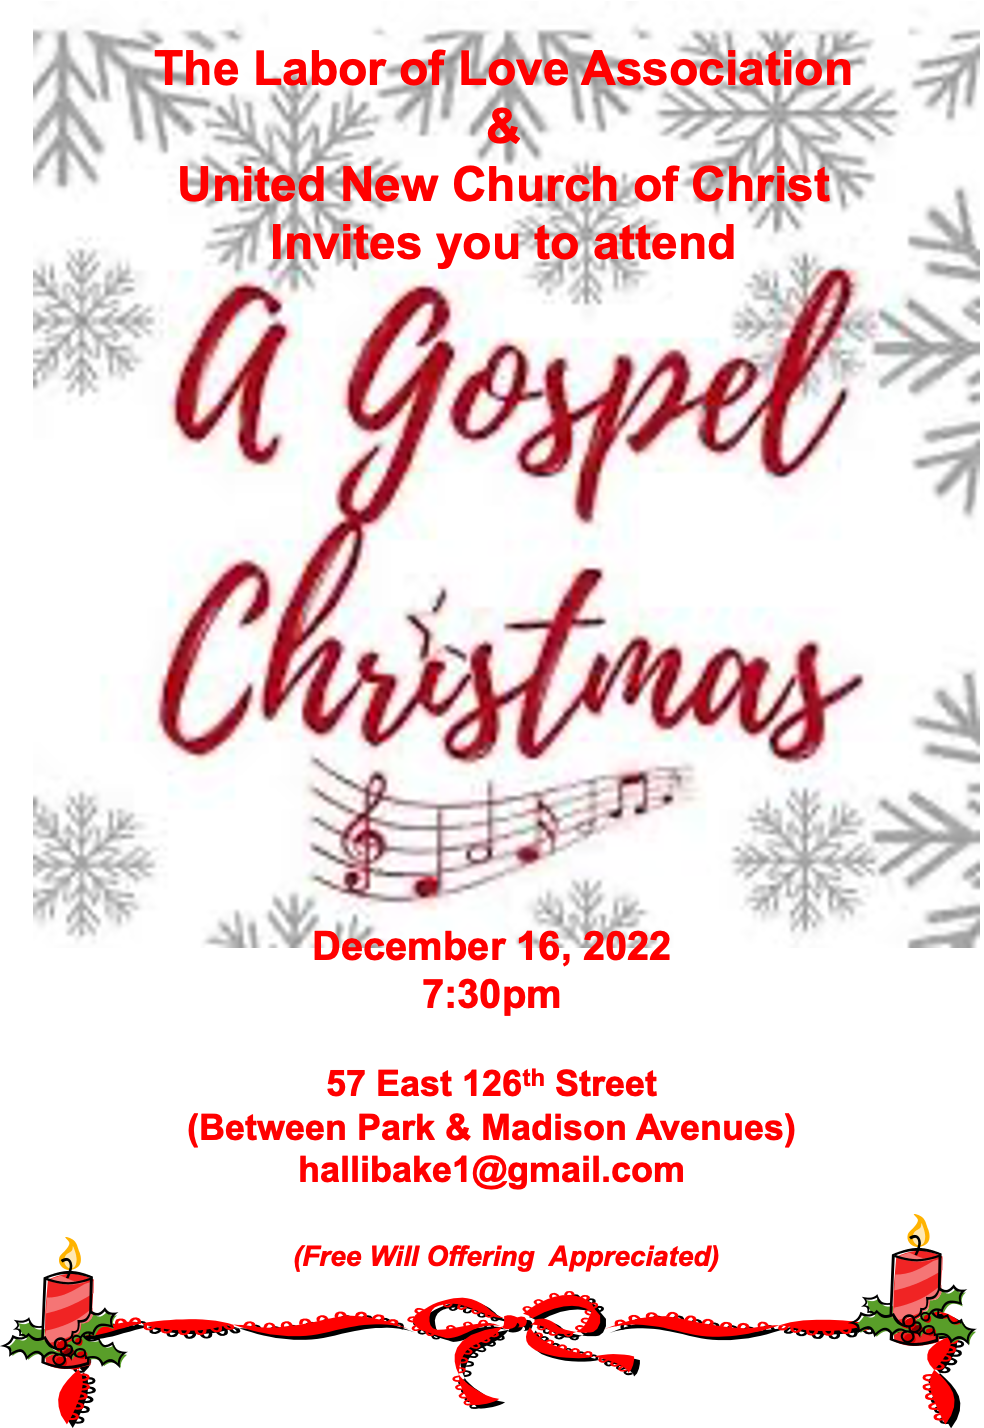 Tomorrow! A Gospel Christmas